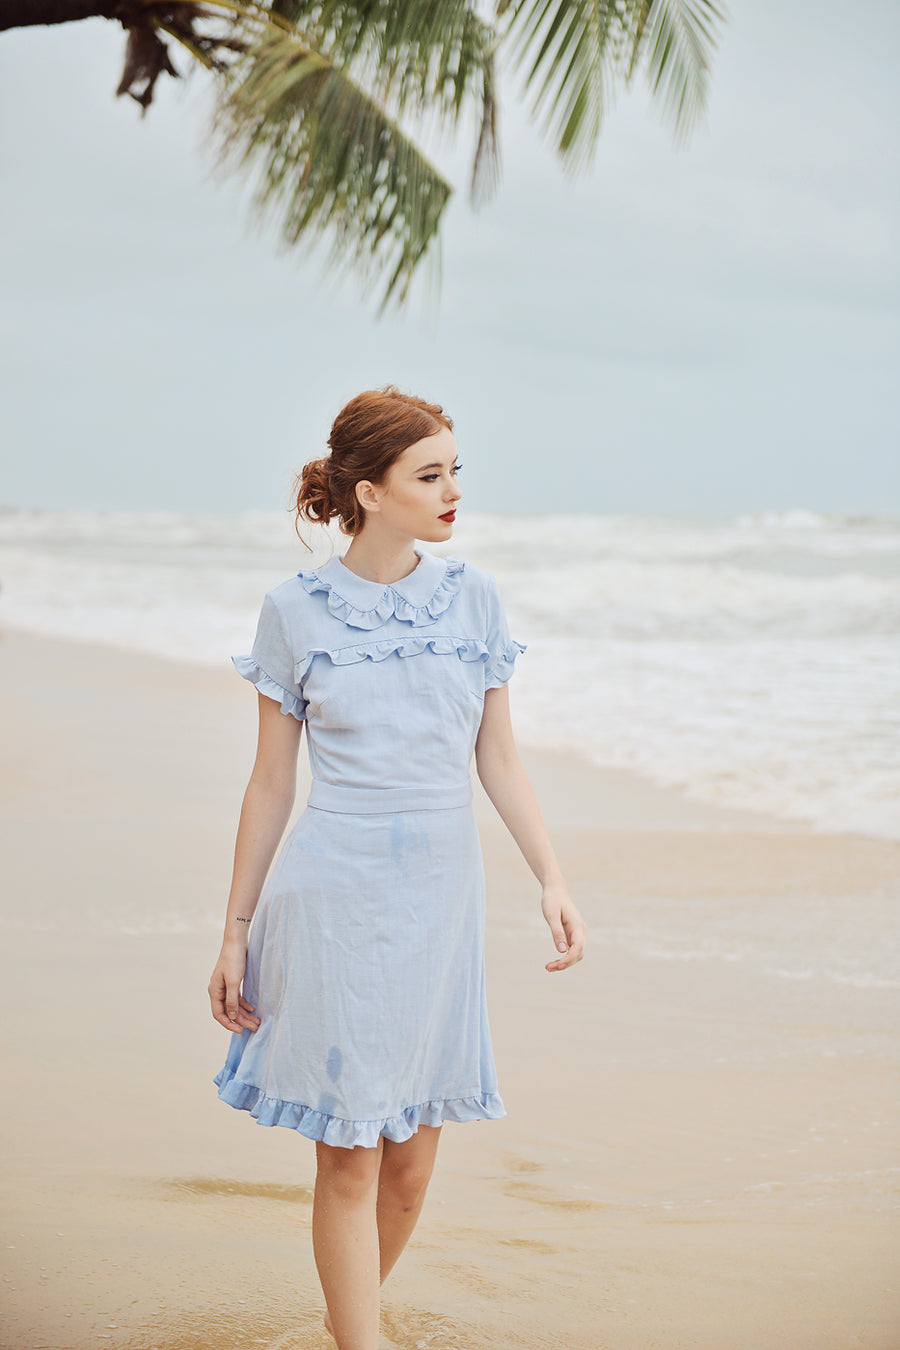 Summer Dress Cotton - Women Linen Dress - Short Sleeves Dress - Frills Cotton Dress